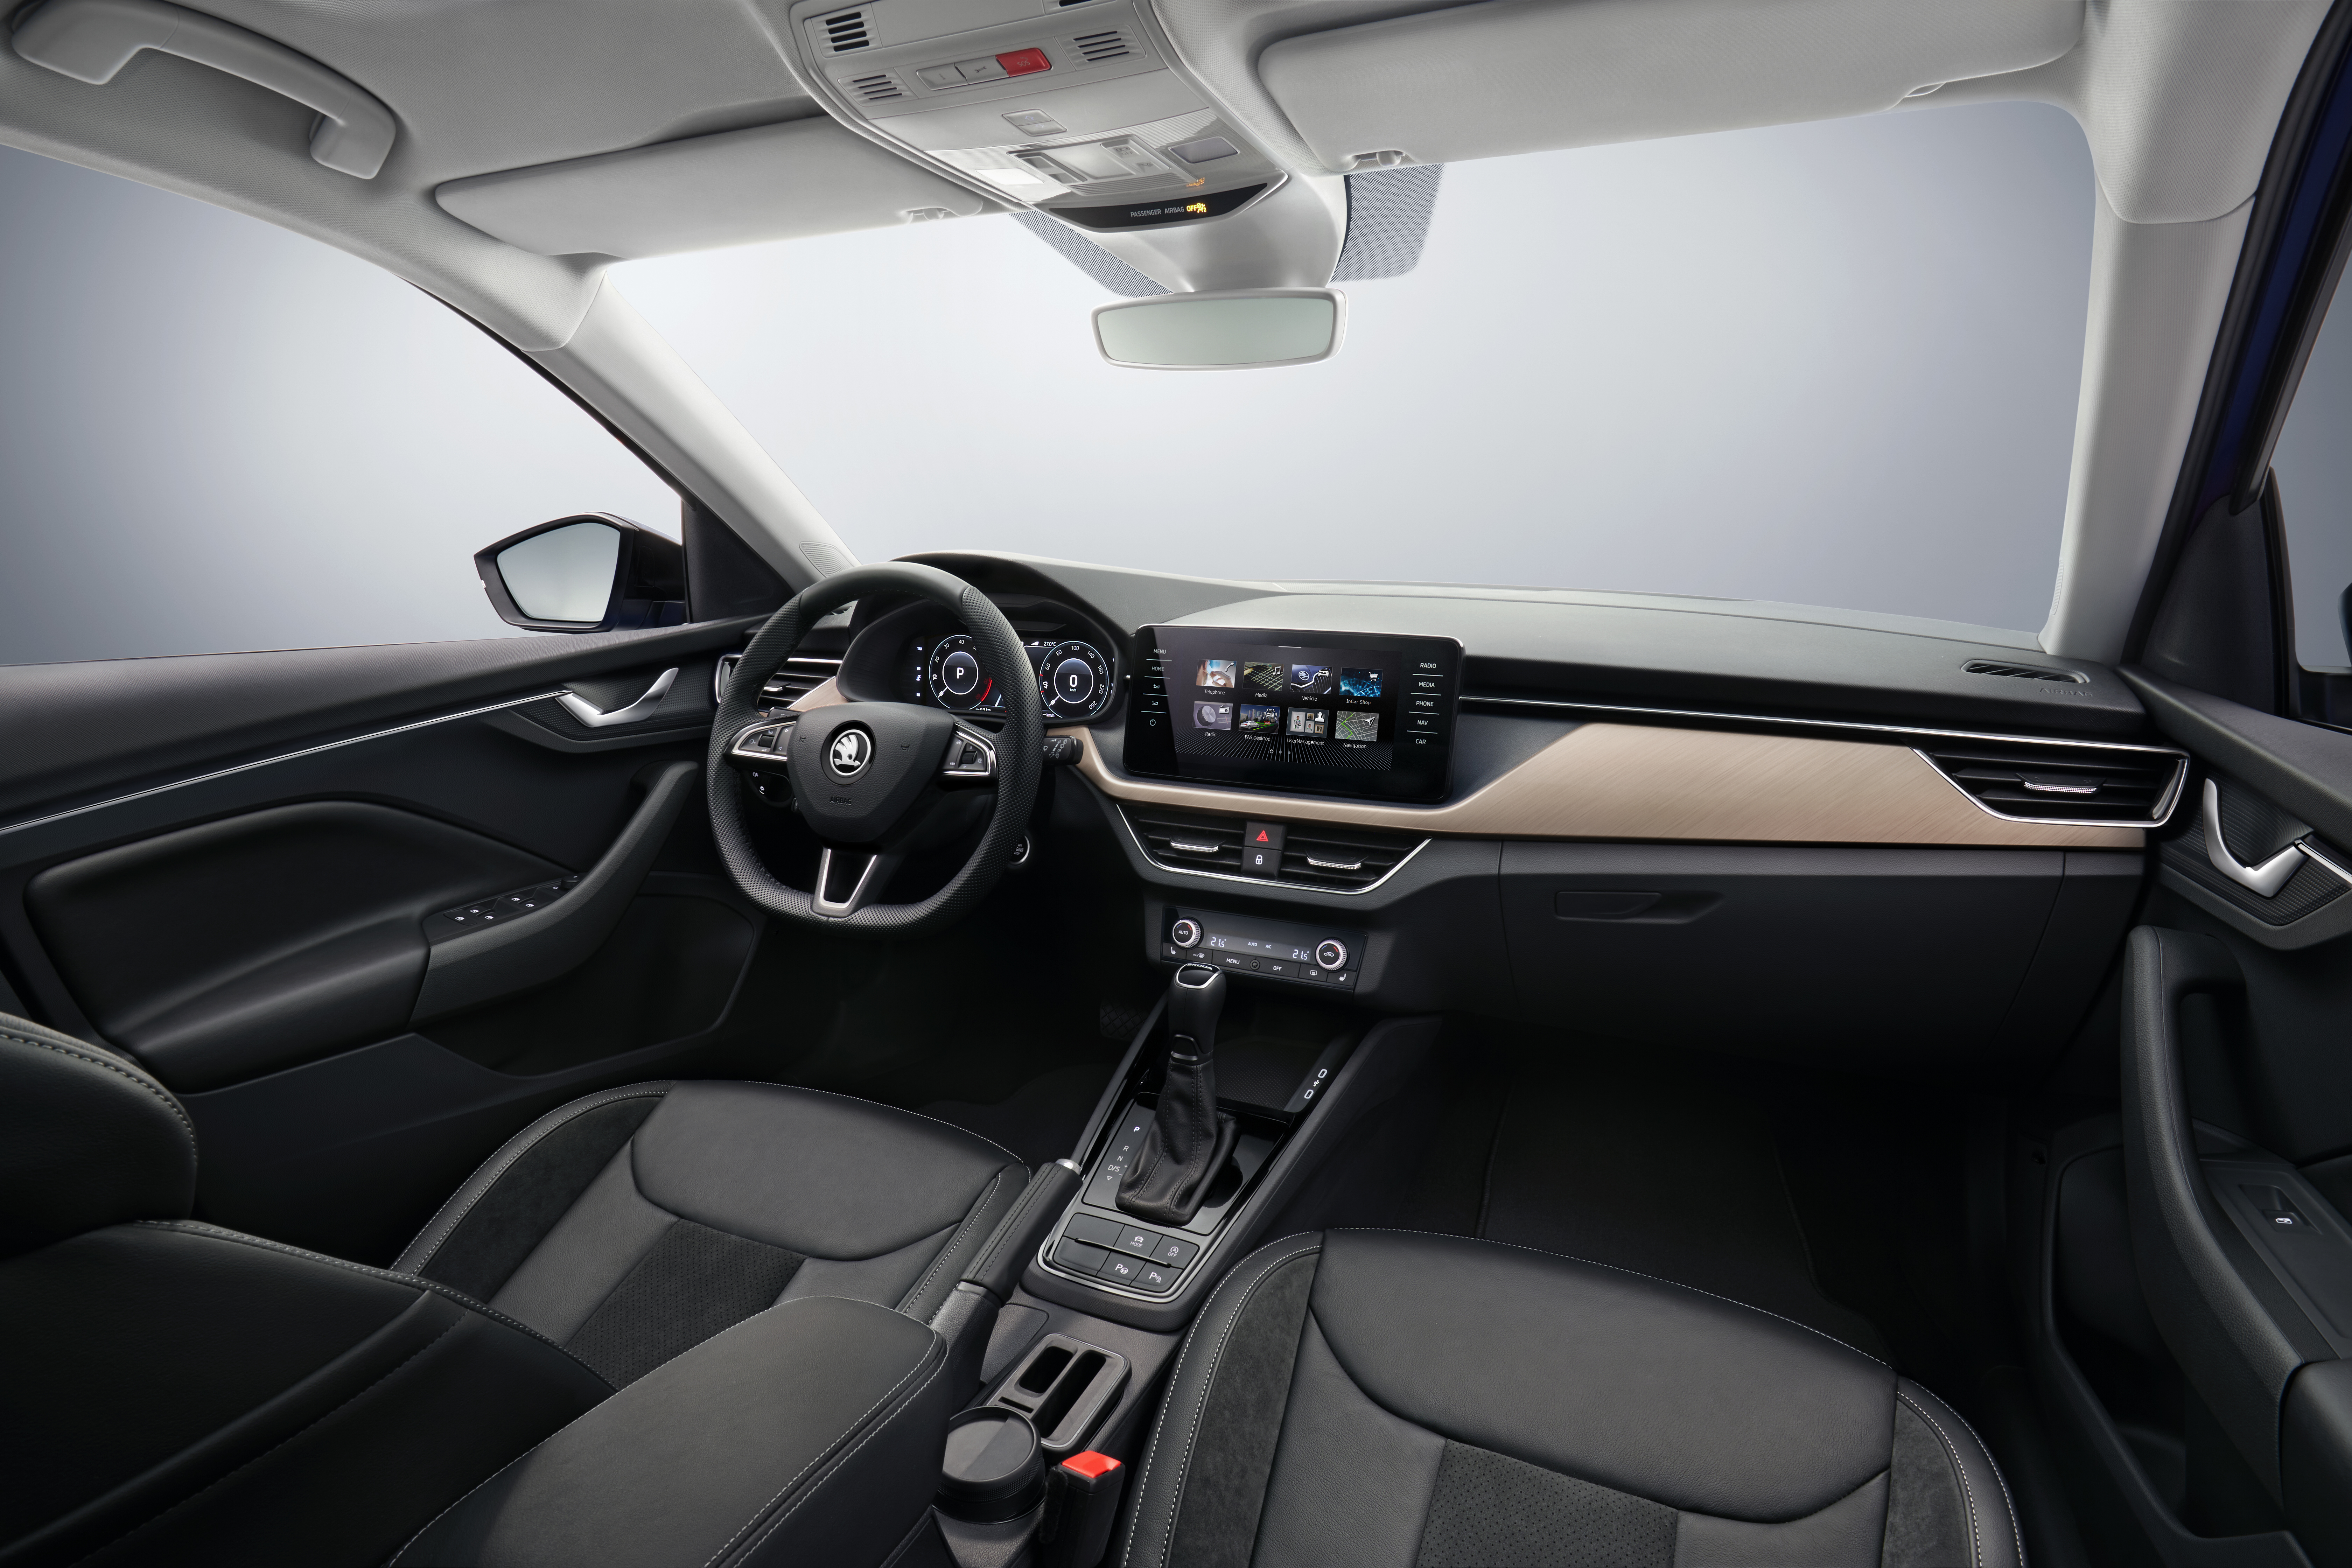 Borealis - Driving Tomorrow  Premium compact Škoda Scala contains…